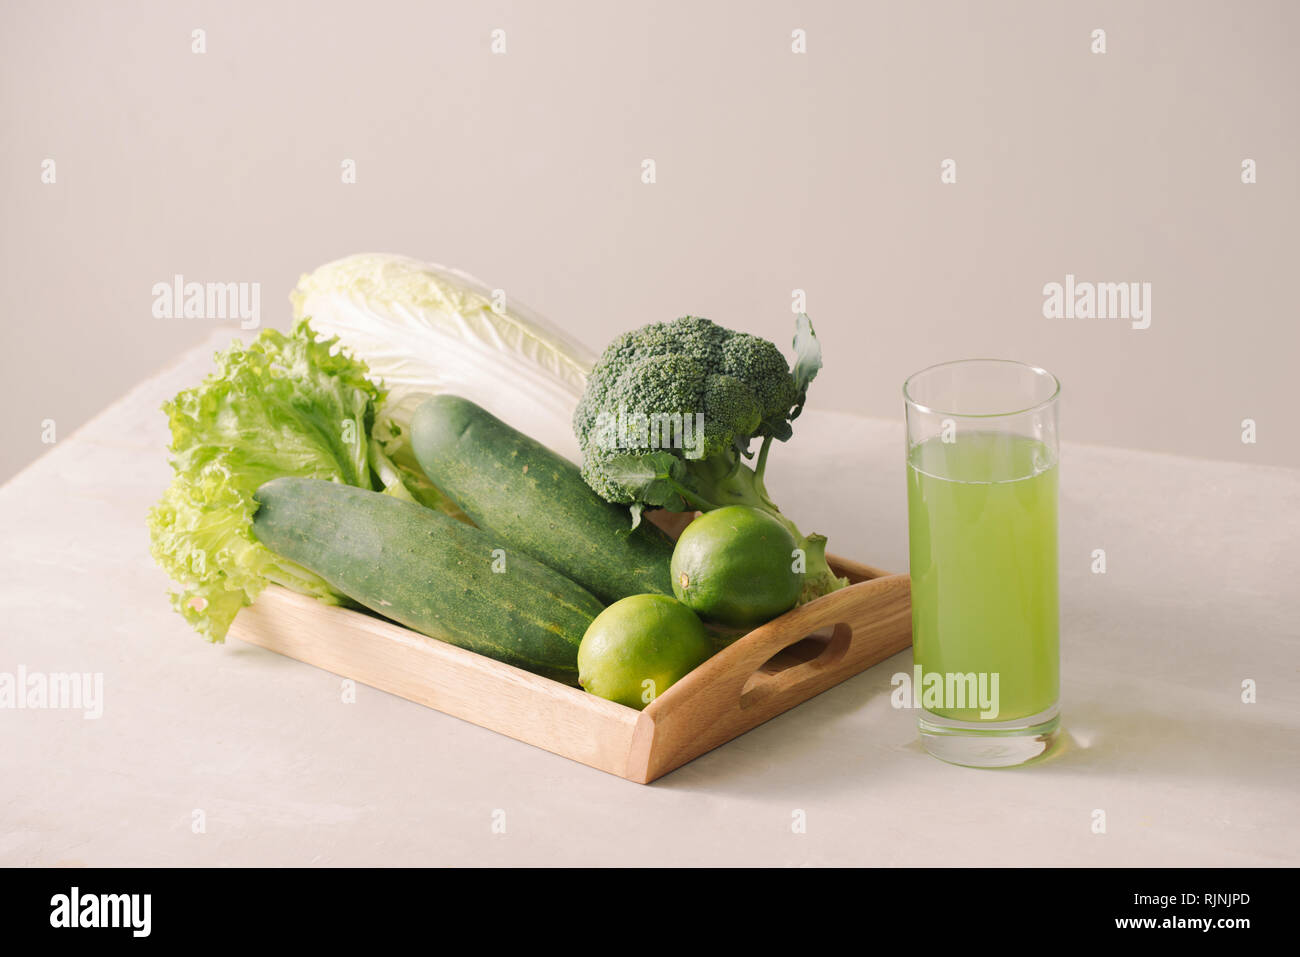 Vegane Ernährung Essen. Detox Drinks. Frisch gepresste Säfte und Smoothies von Gemüse. Auf weißem Hintergrund, Holz- fach, Zutaten. Platz kopieren Stockfoto